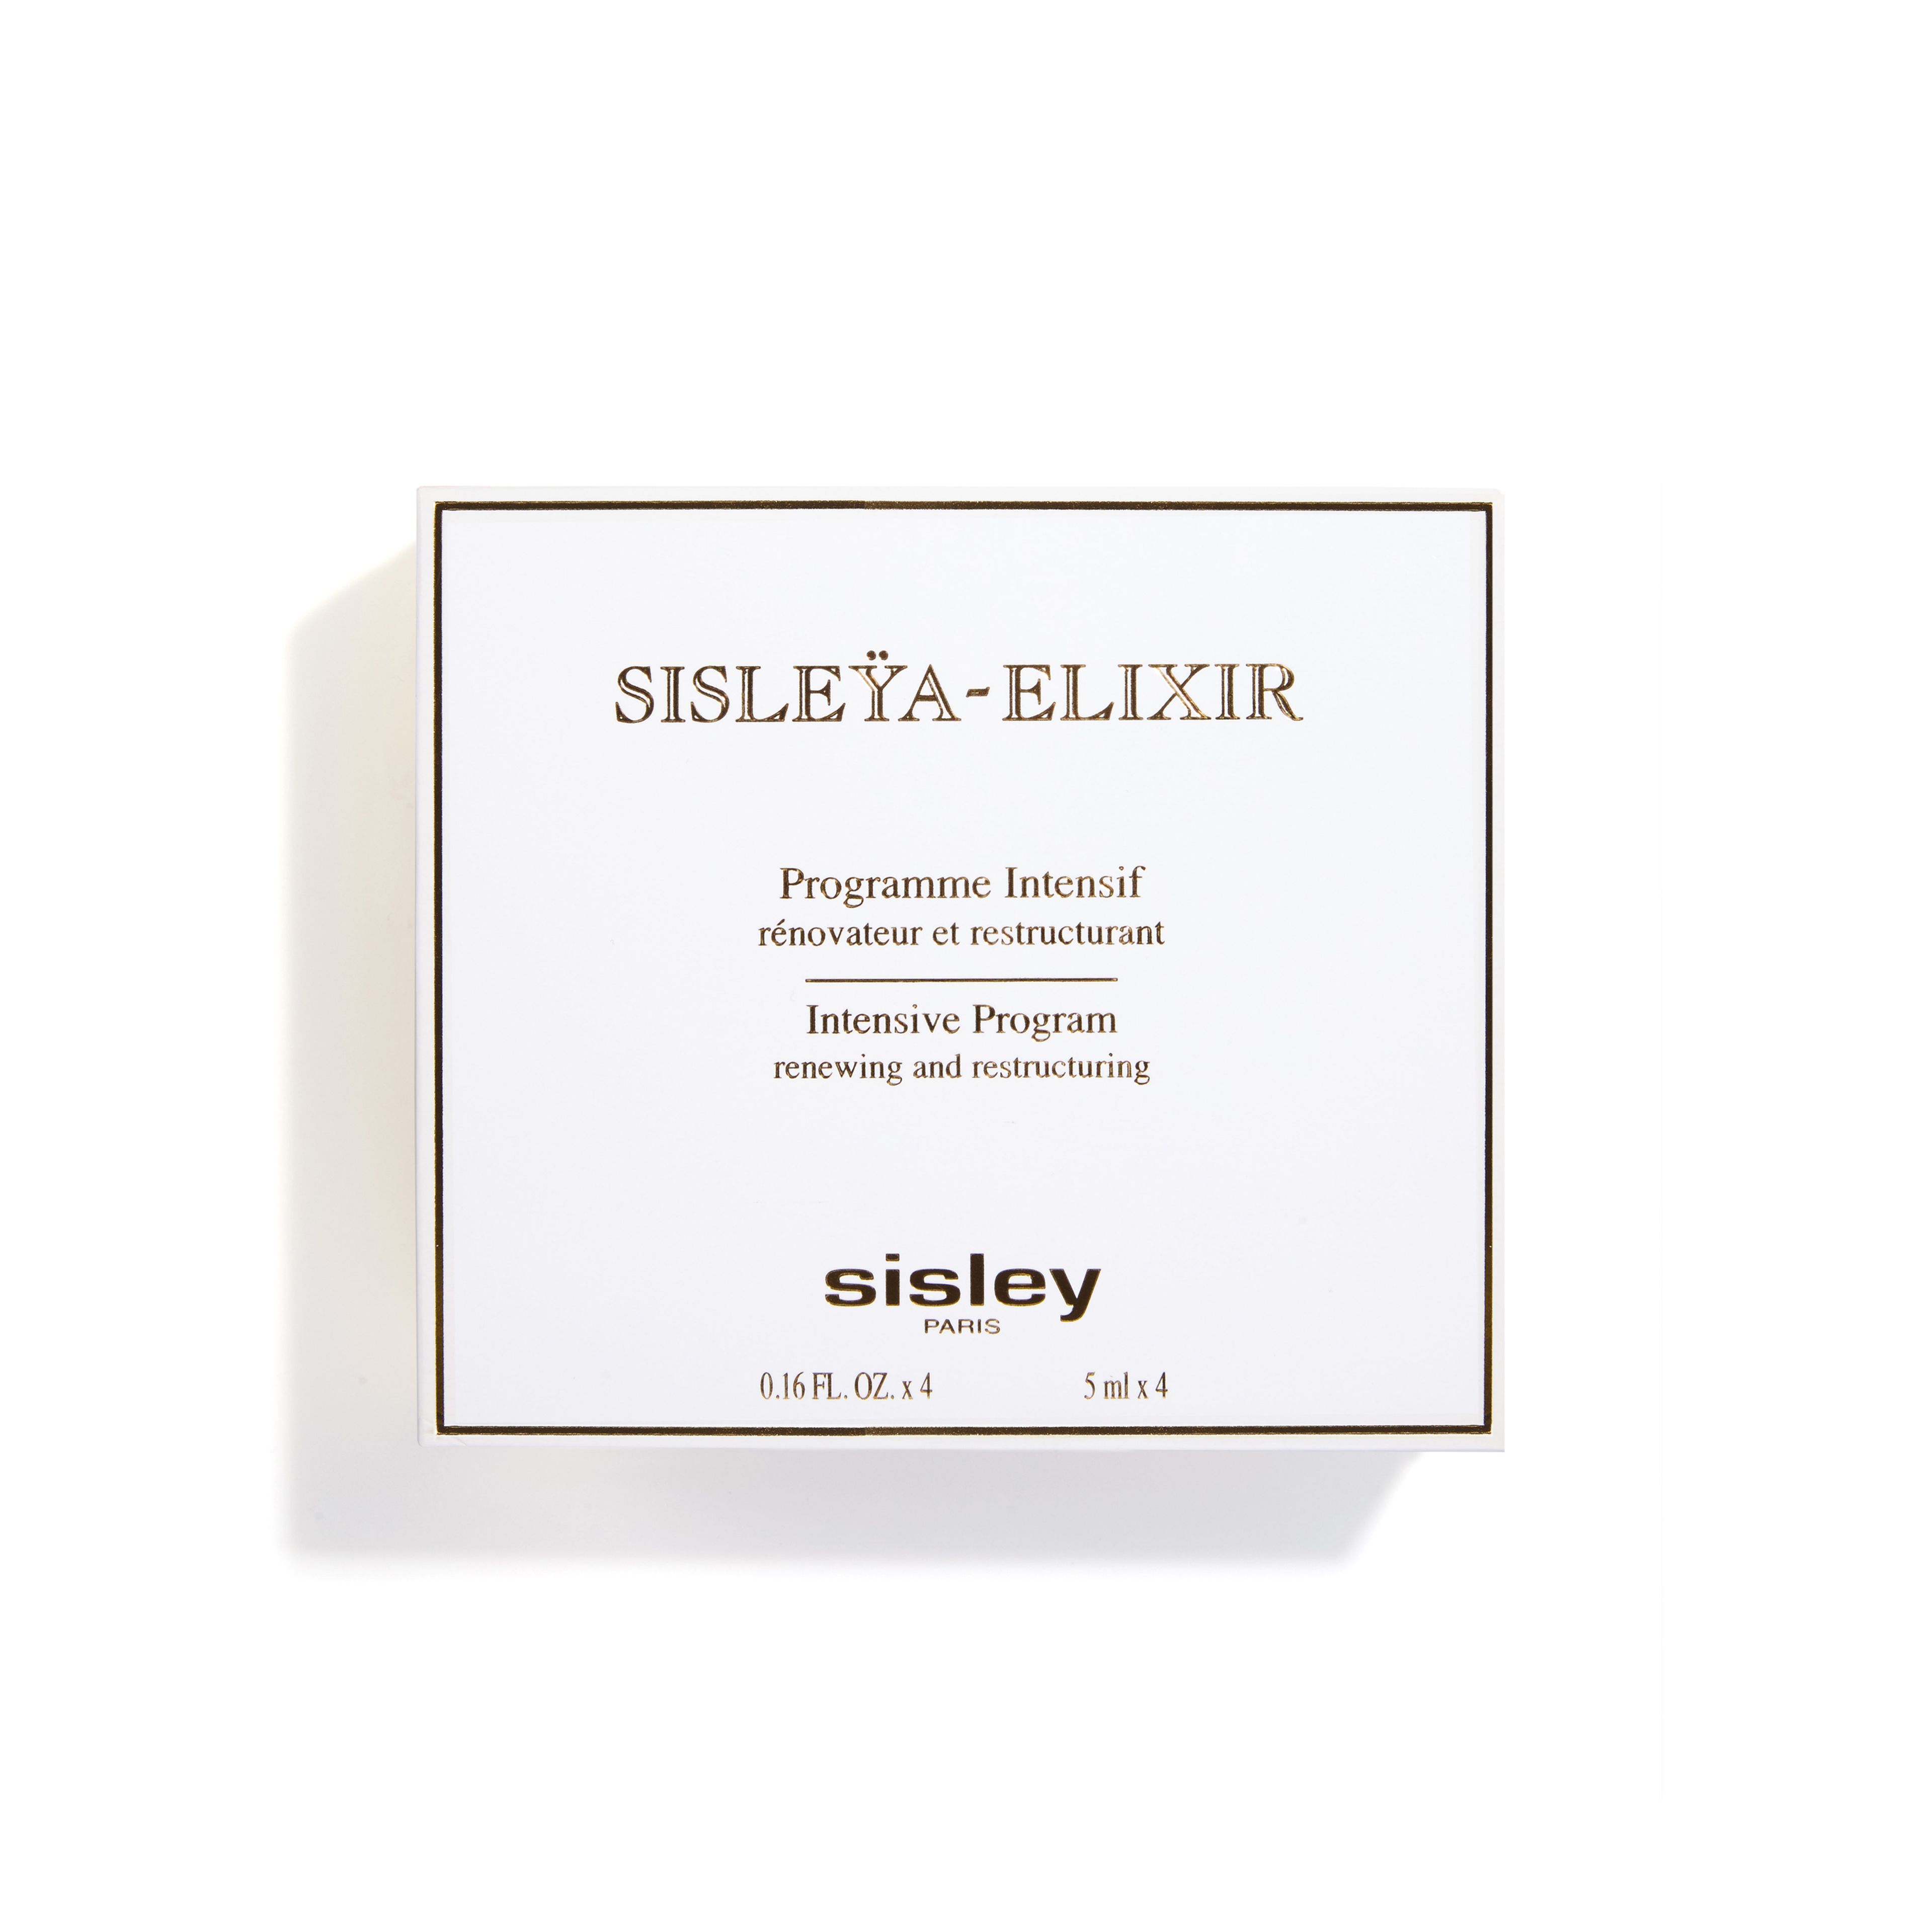 SISLEY Sisleÿa-elixir 3